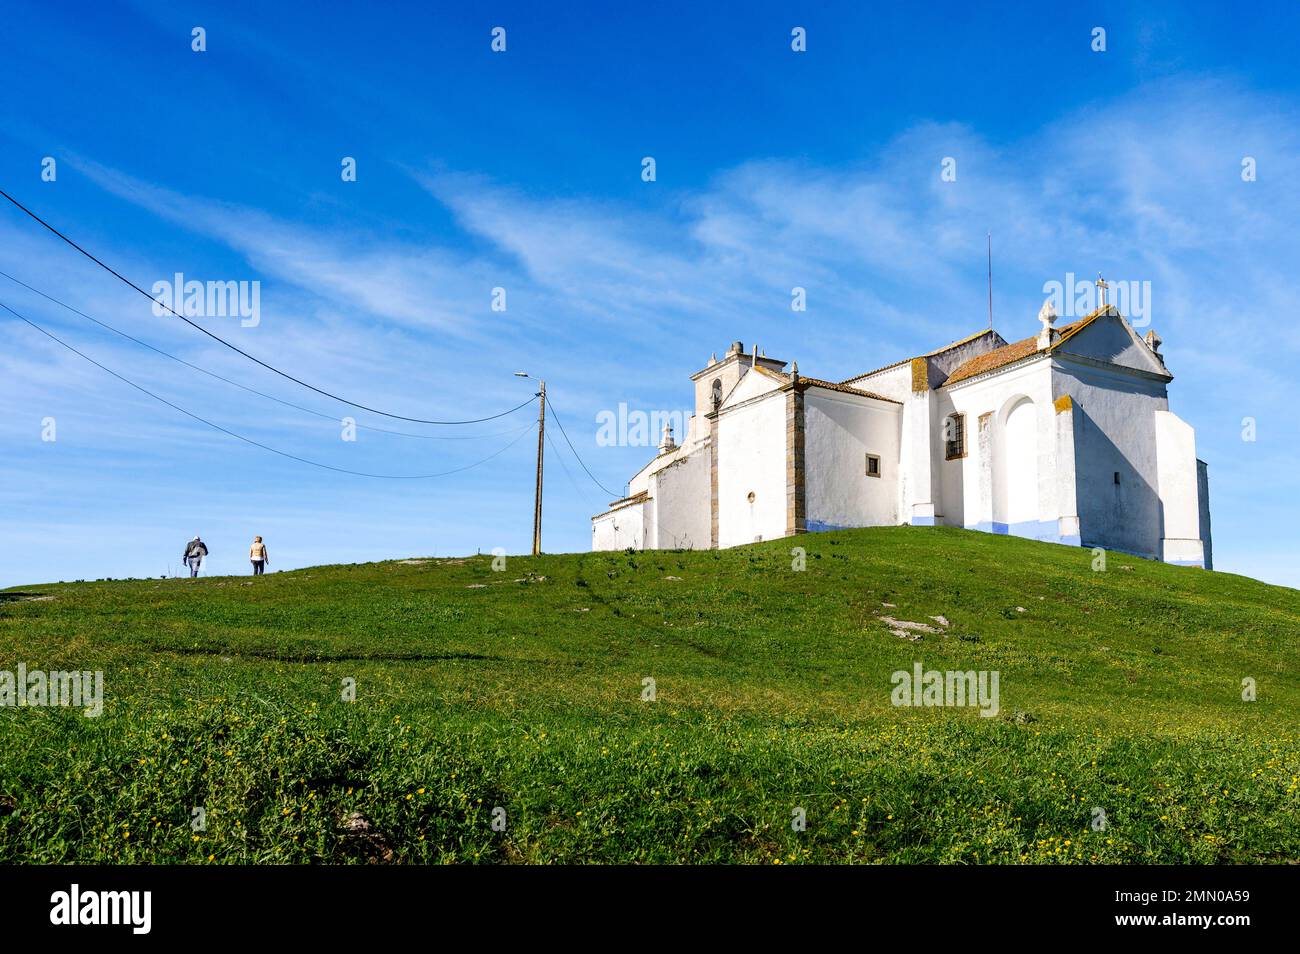 Portugal, région de l'Alentejo, ville d'Arraiolos, église Salvador à l'intérieur de la citadelle au-dessus de la ville Banque D'Images